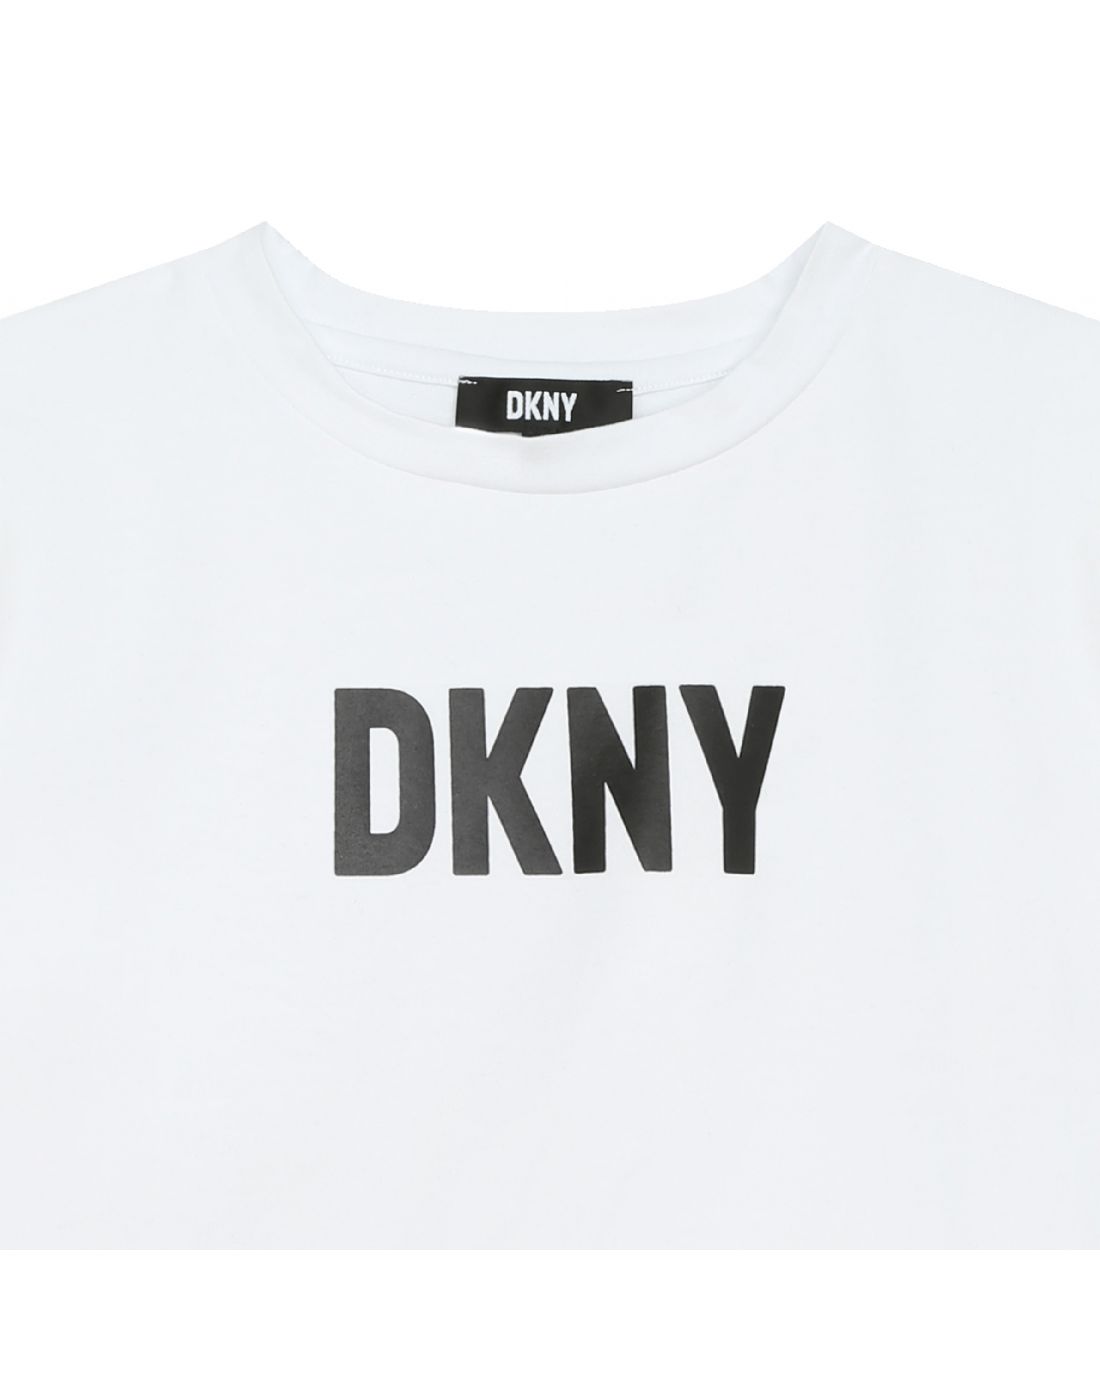 Παιδική Μπλούζα D.K.N.Y, DKNY, 24161564 | LapinKids.com | LAPIN KIDS